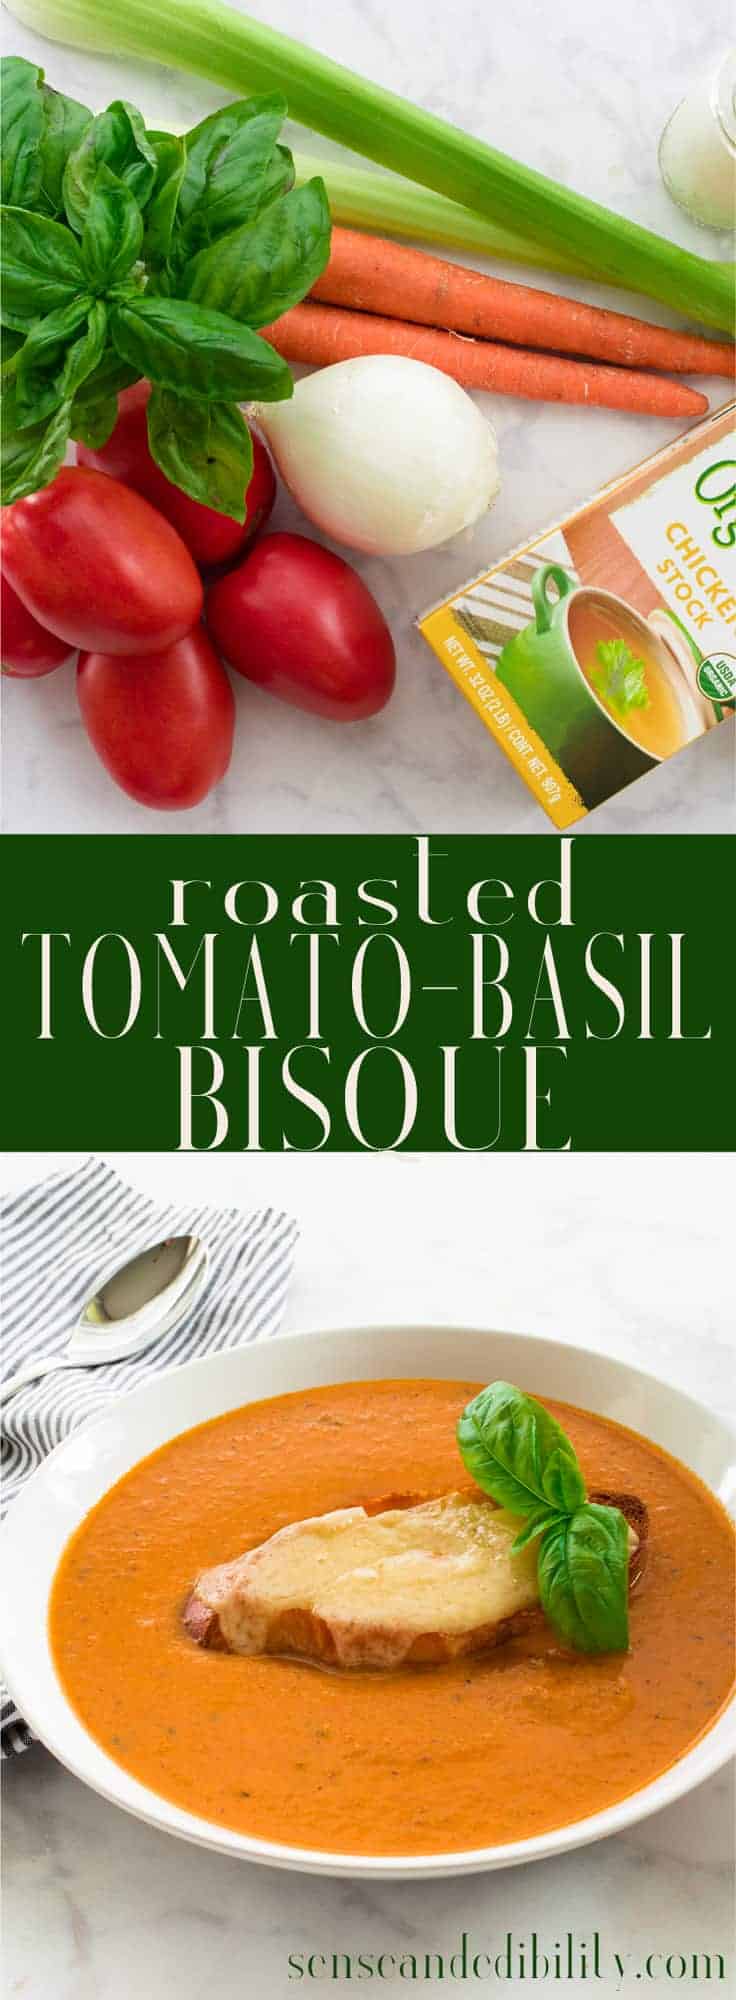 Sense & Edibility's Roasted Tomato-Basil Bisque Pin